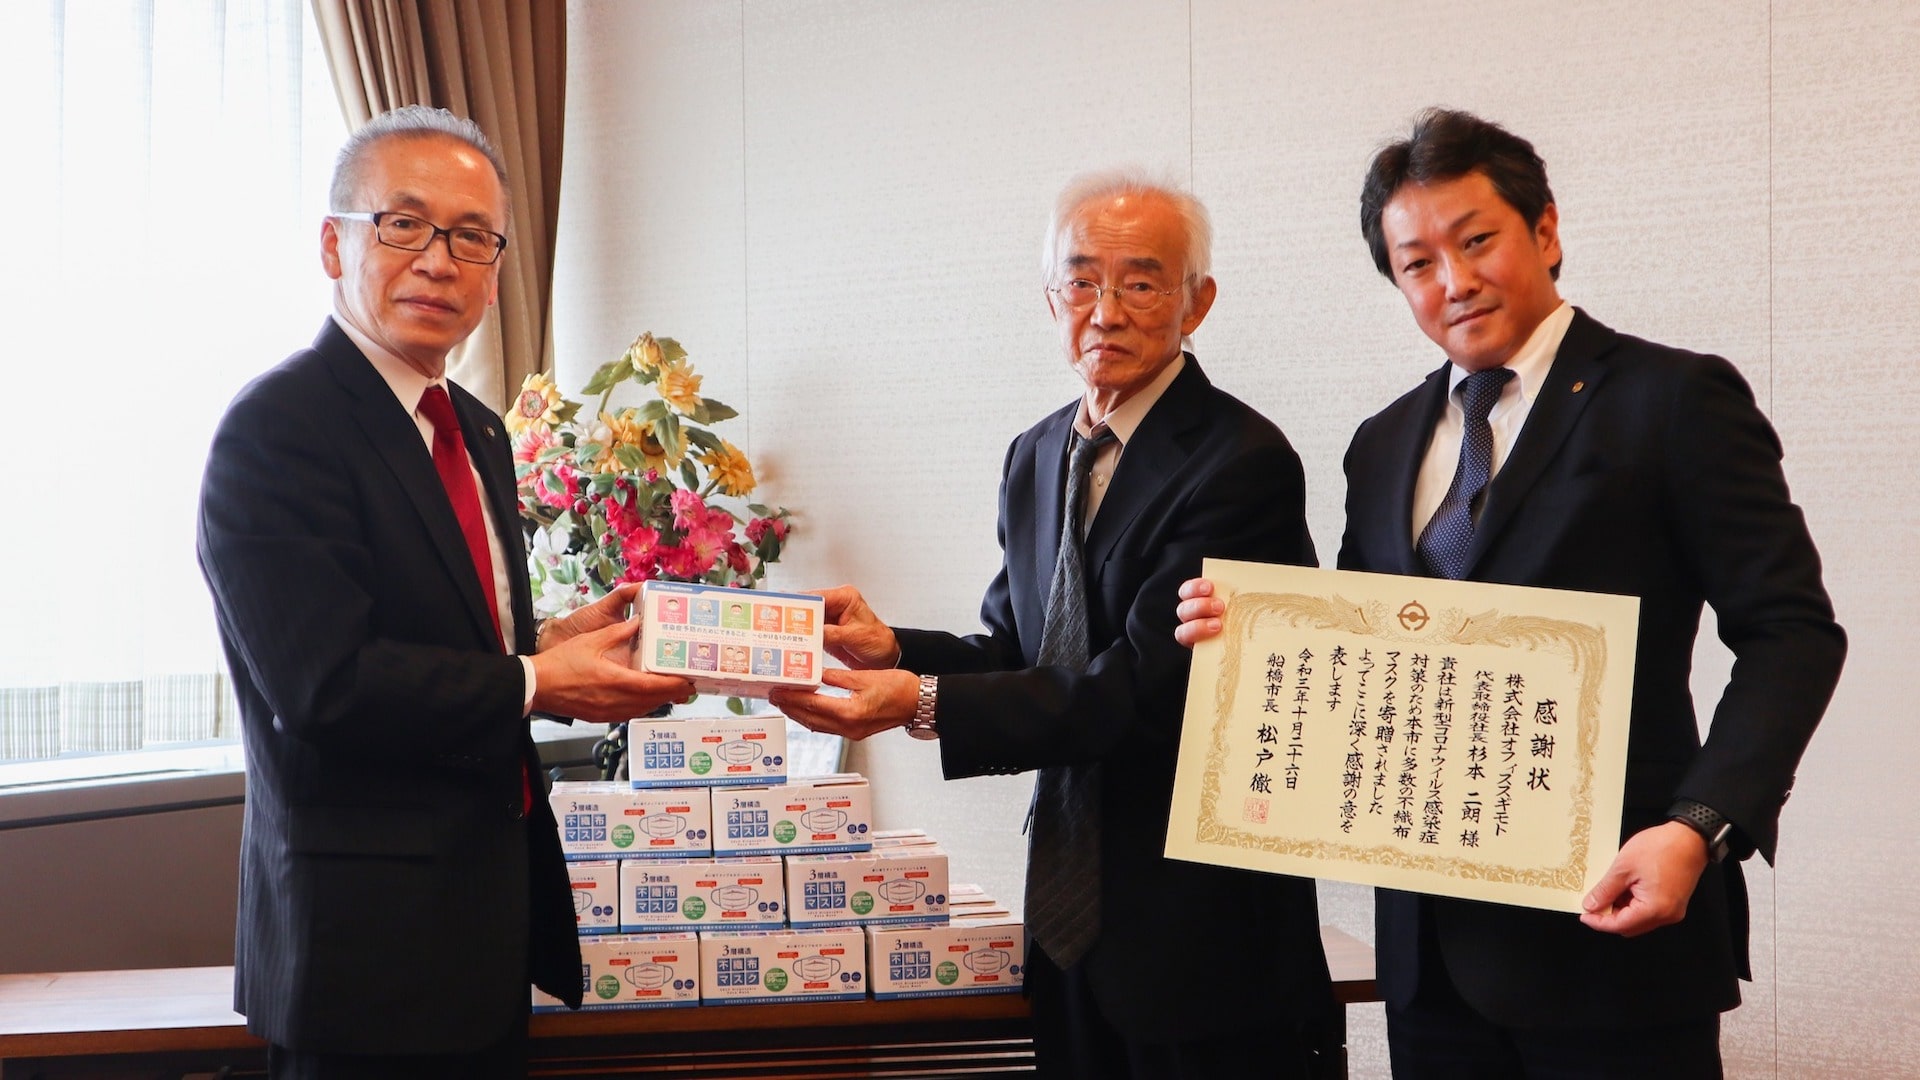 船橋市の松戸市長から感謝状をいただきました